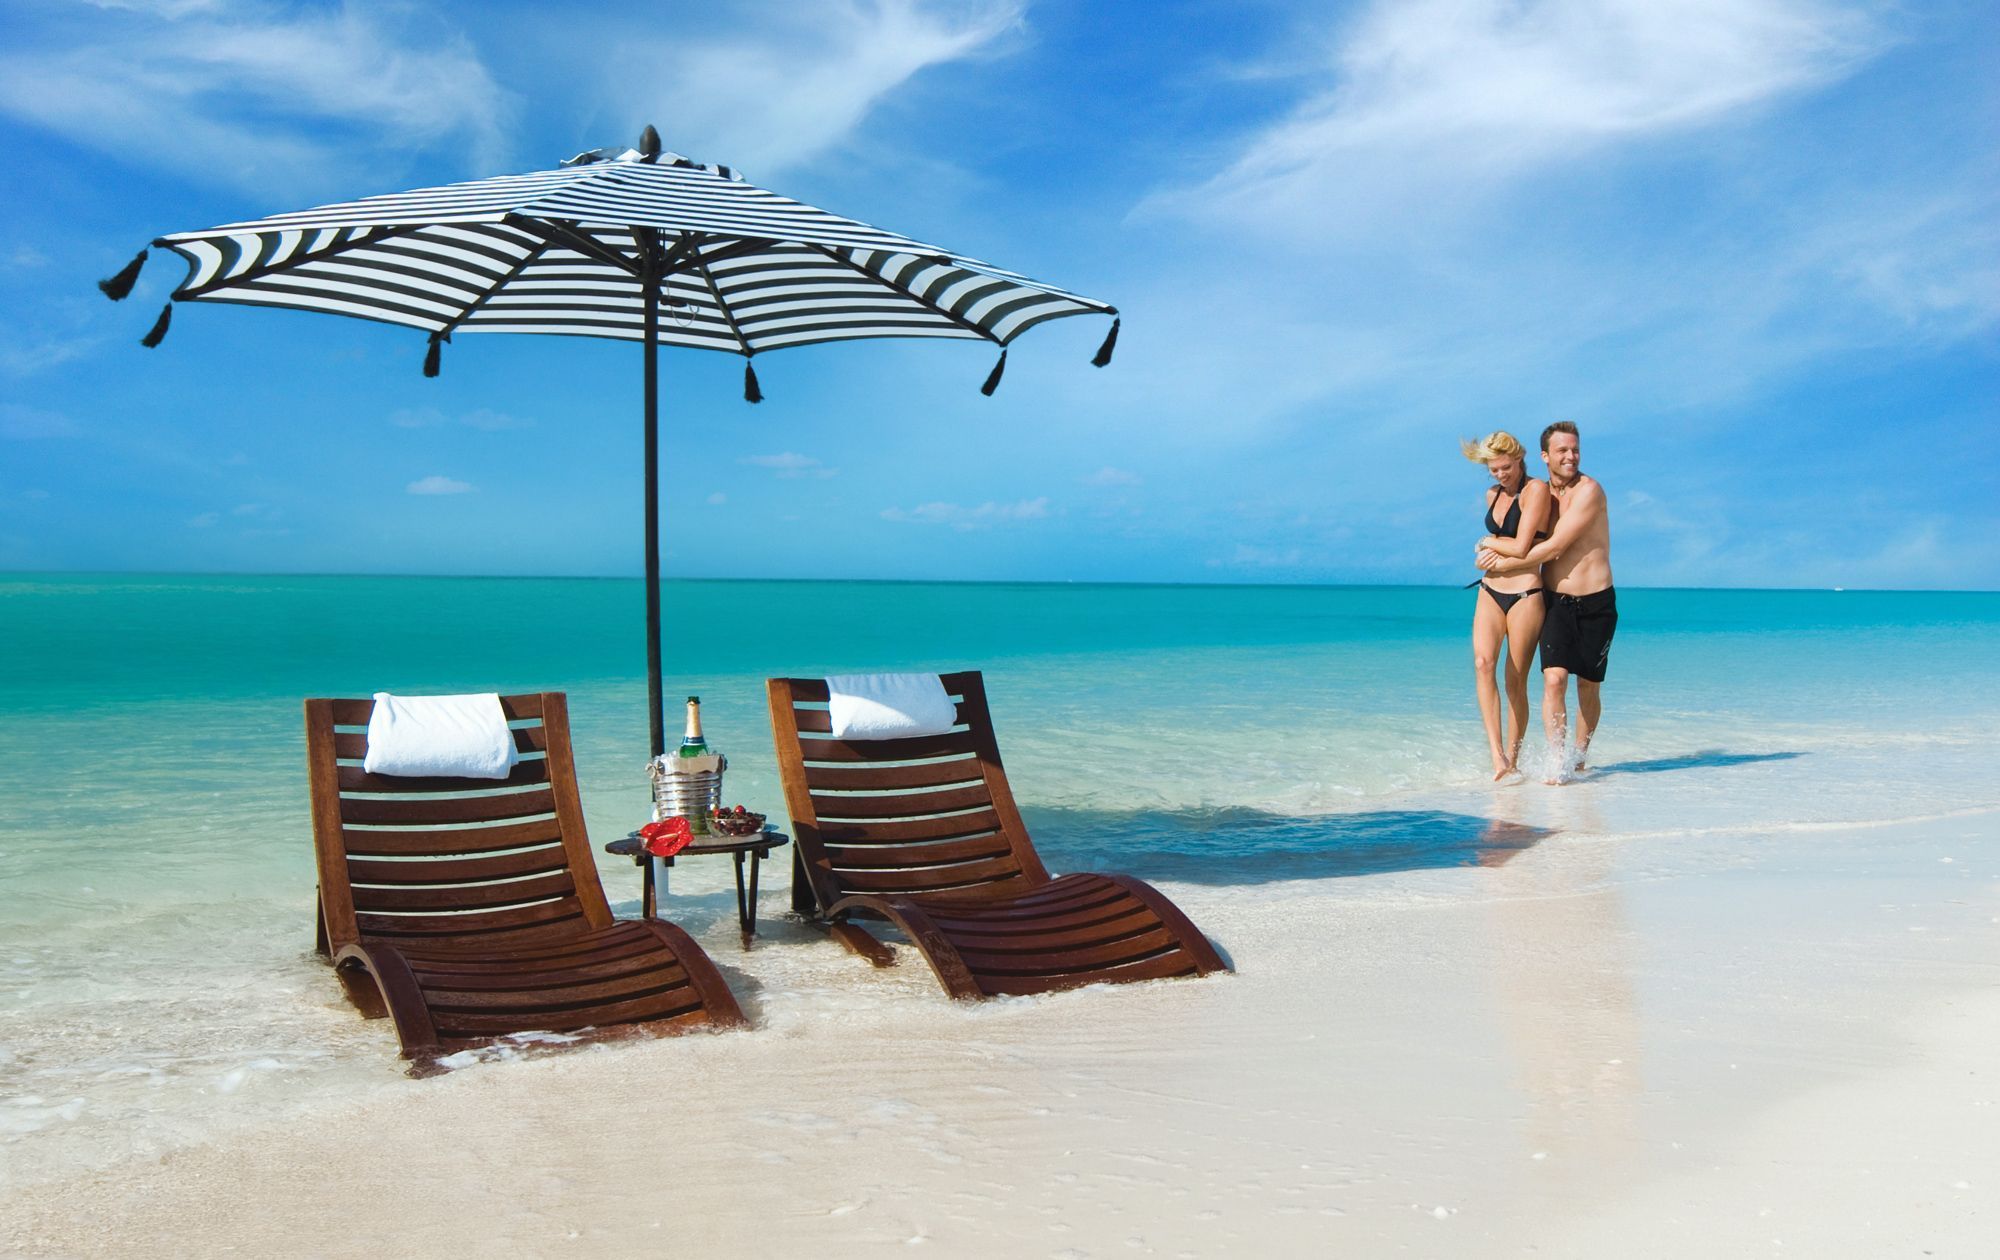 18 Beaches Resorts Insider Tips & Tricks BEACHES